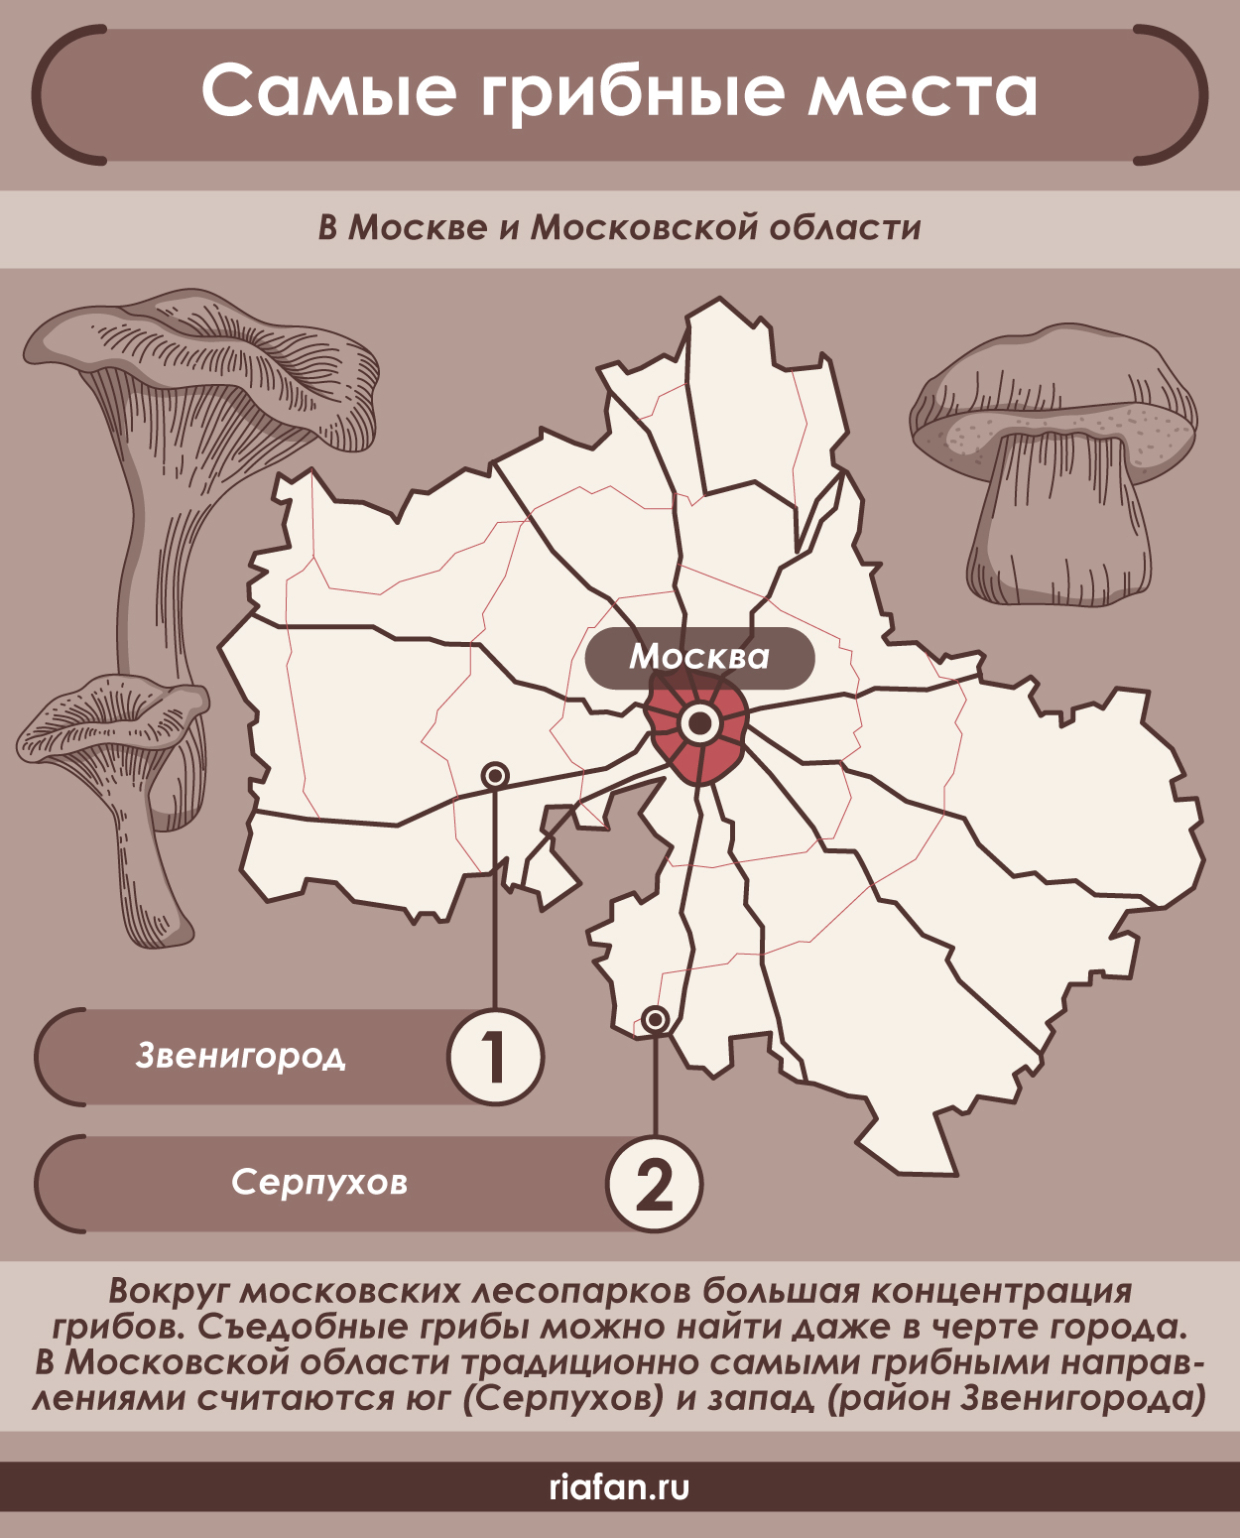 Миколог Вишневский назвал самые грибные места в Москве и Московской области